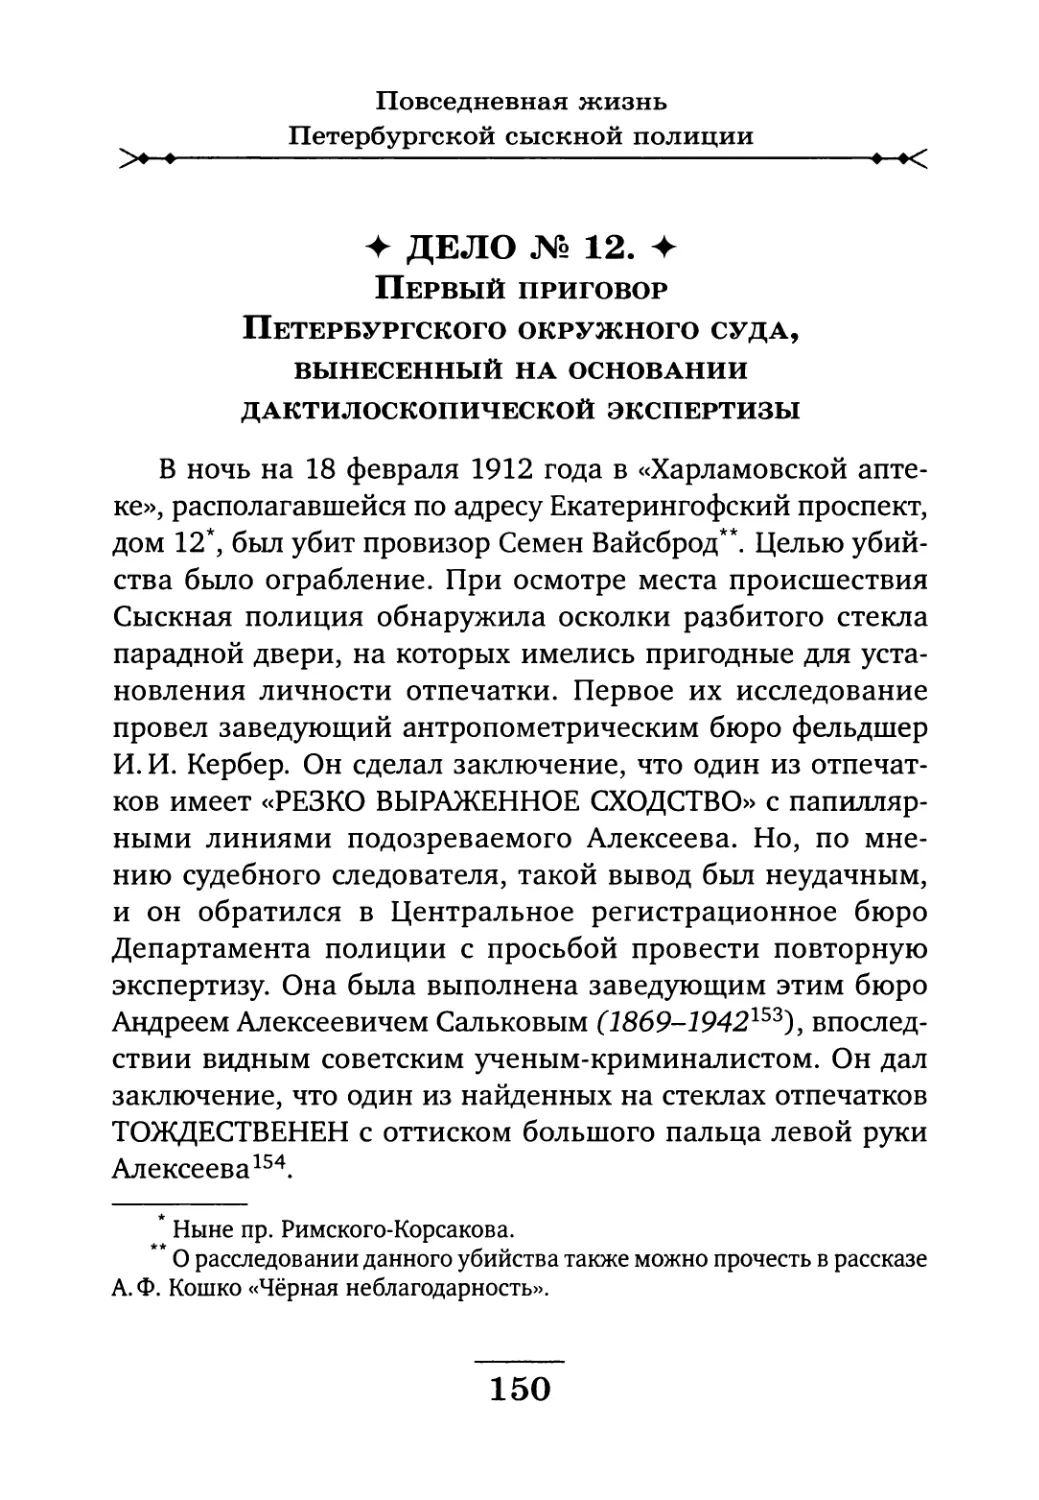 Дело № 12. Первый приговор Петербургского окружного суда, вынесенный на основании дактилоскопической экспертизы